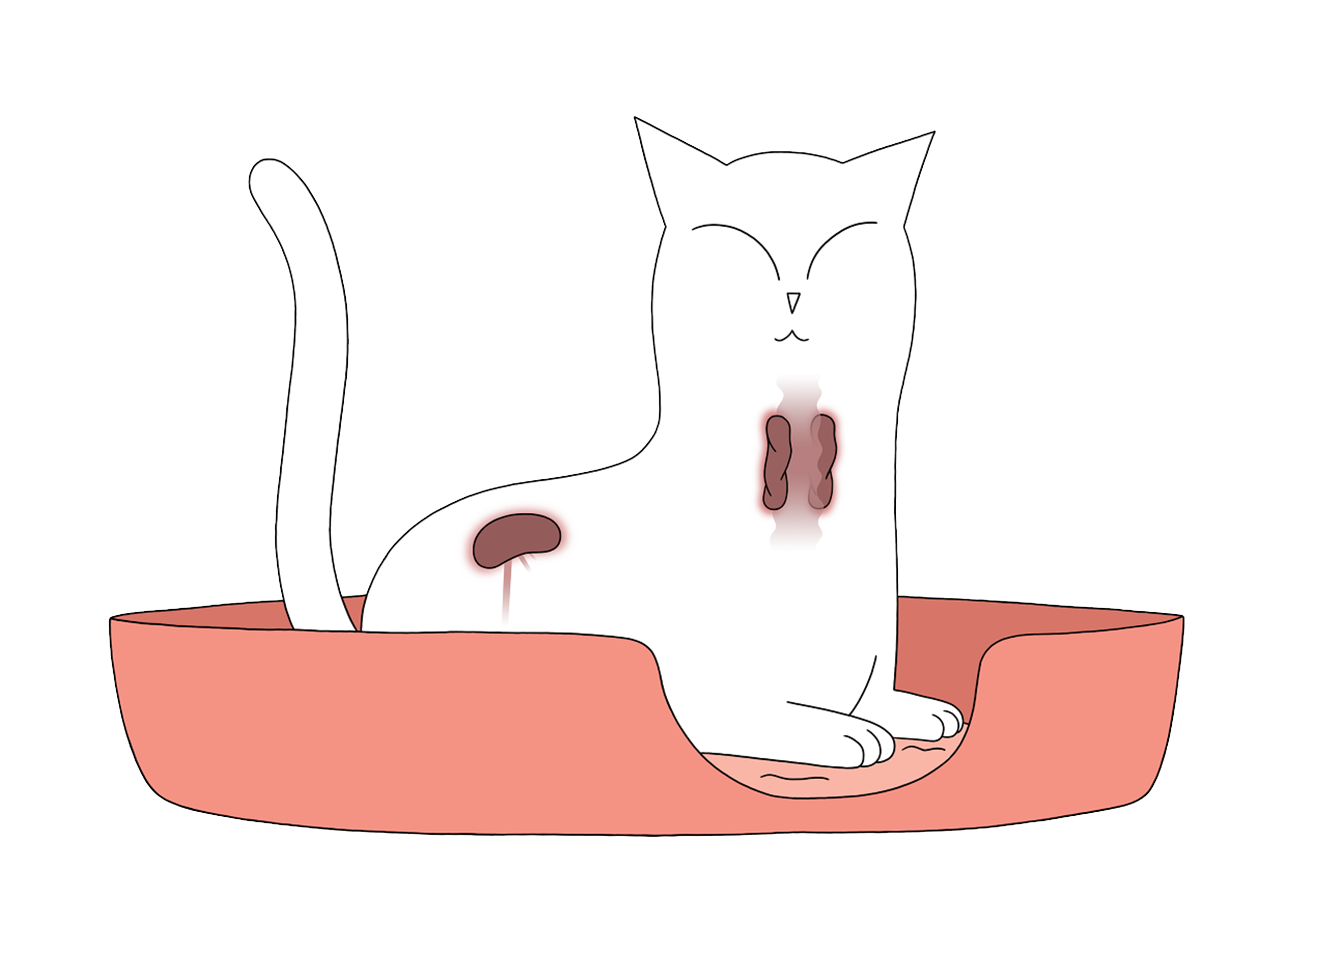 Katte hvor skjoldbruskkirtlen og nyrerne er illustreret. Disse kan være koblet sammen med forhøjet blodtryk (hypertension)